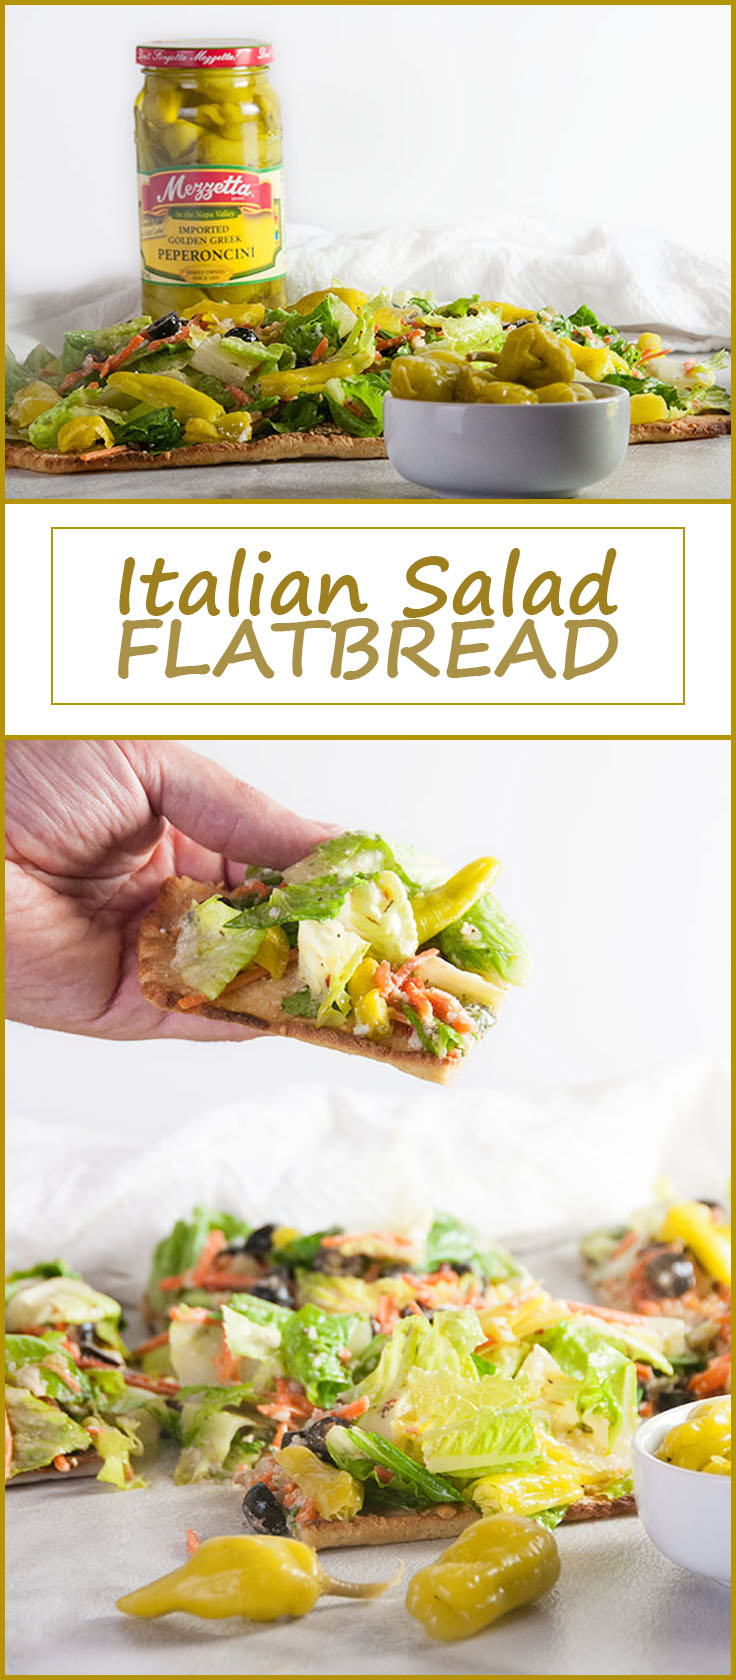 Italian Salad Flatbread from www.SeasonedSprinkles.com